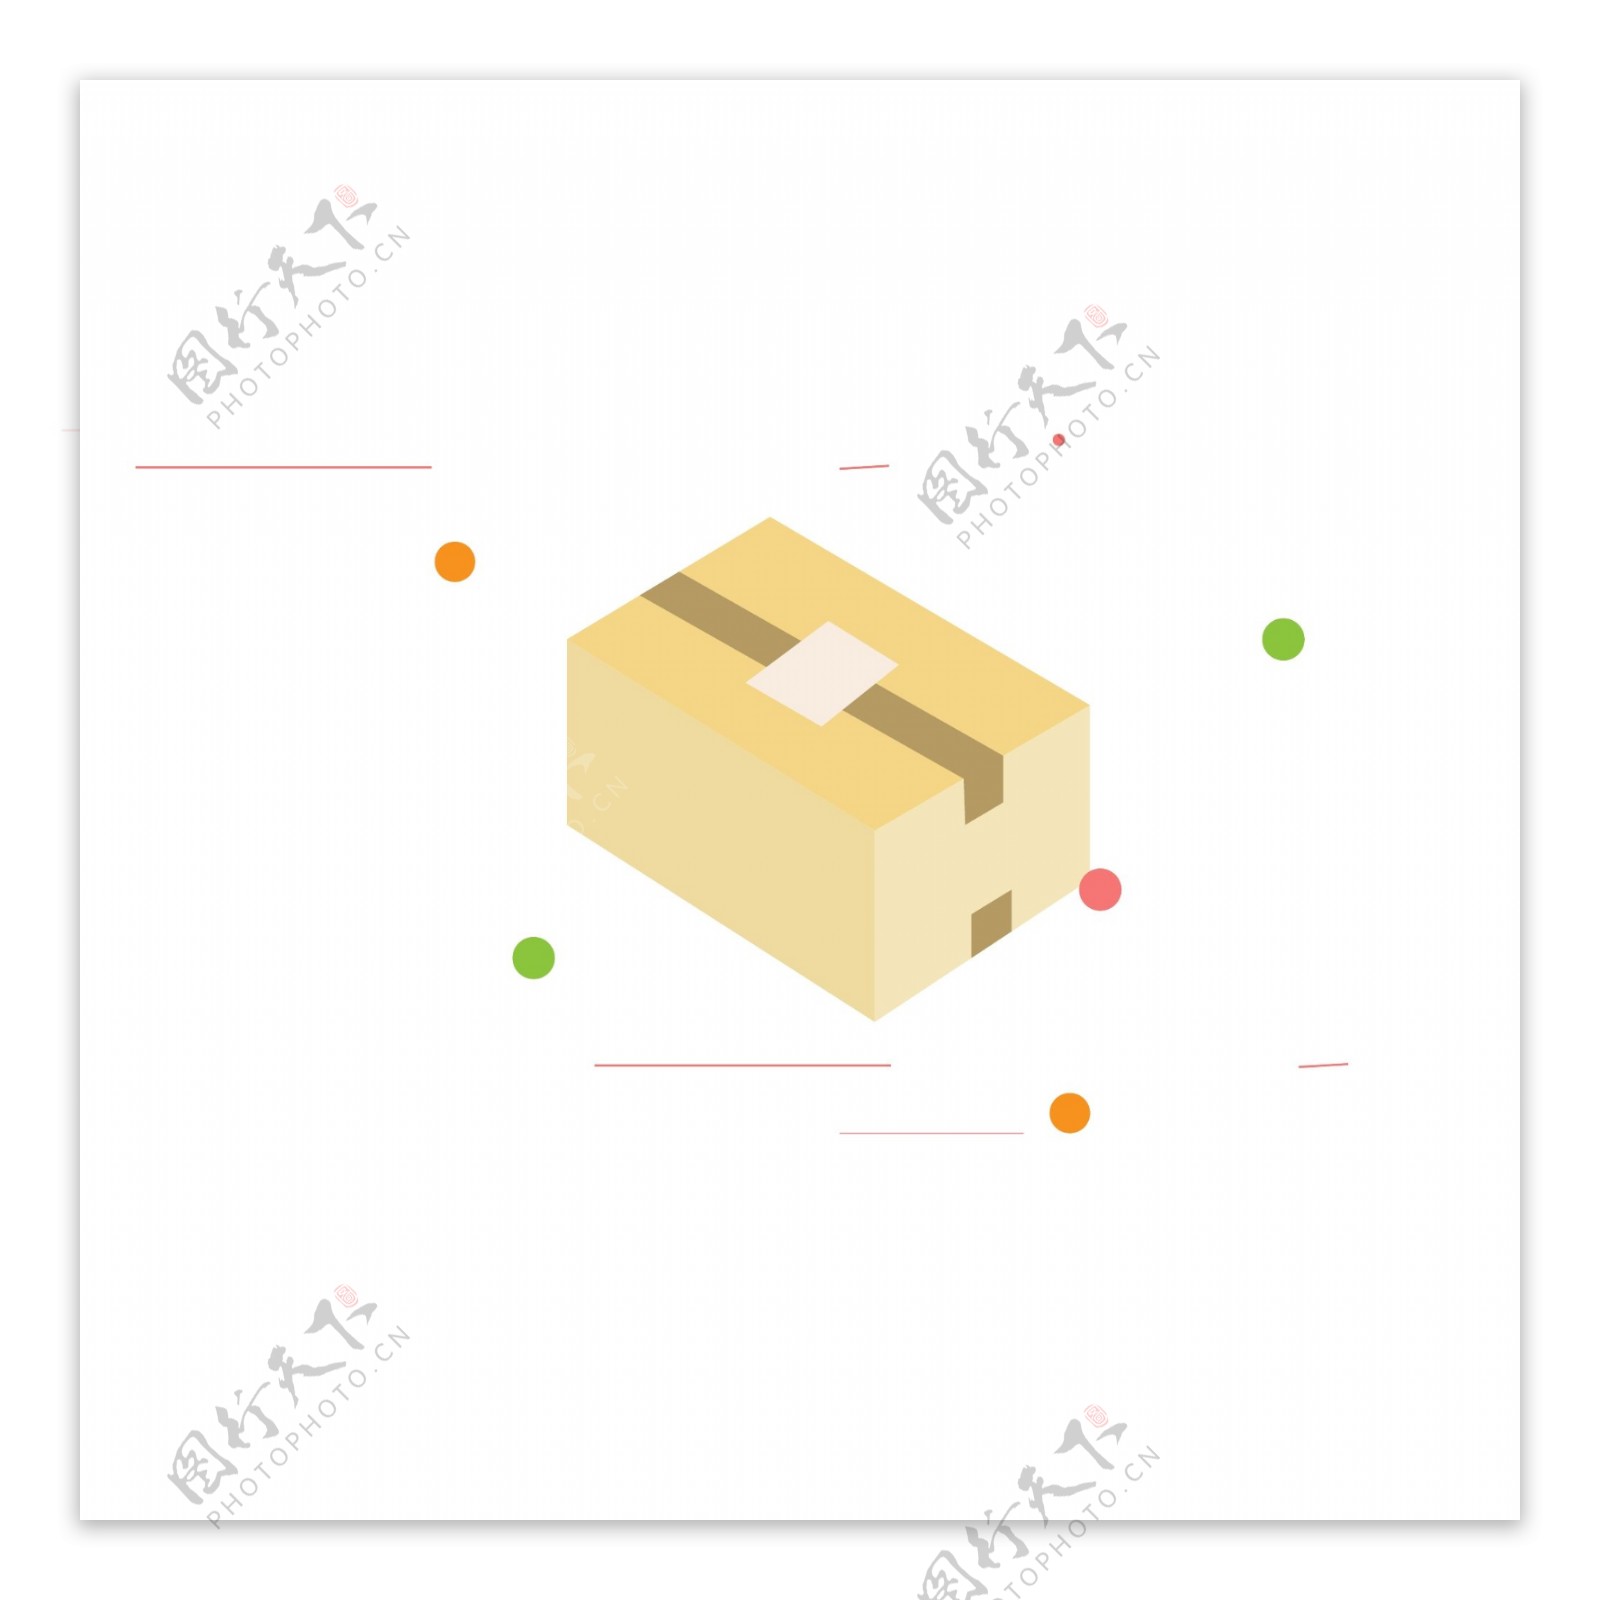 立体原创手绘礼物盒礼品盒纸盒快递盒元素